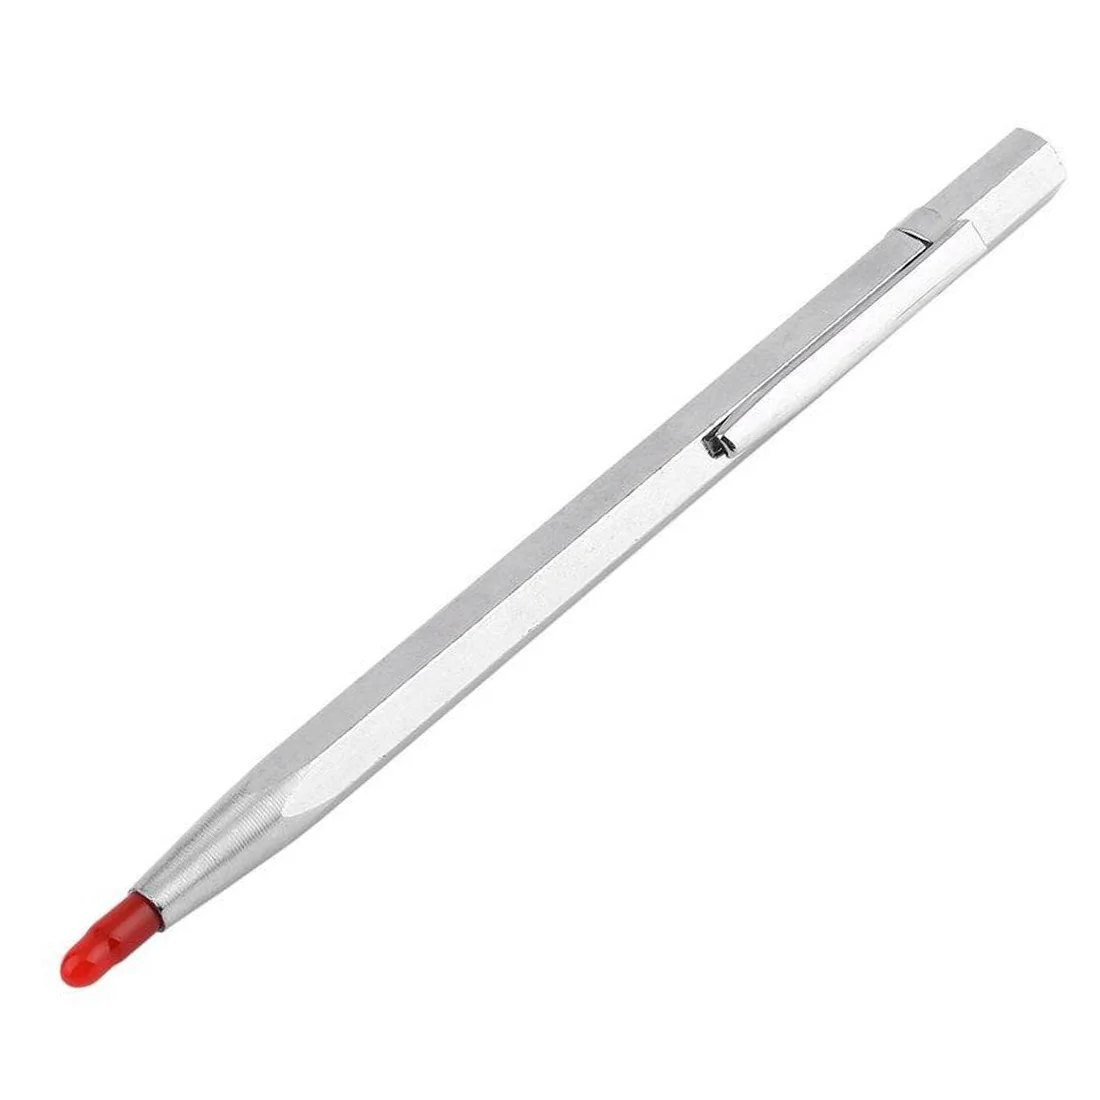 Ручка для гравировки, ручной инструмент, ручка с надписью из сплава, металлическая ручка для гравировки, портативная ручка для резки по стеклу, керамике, металлу, дереву